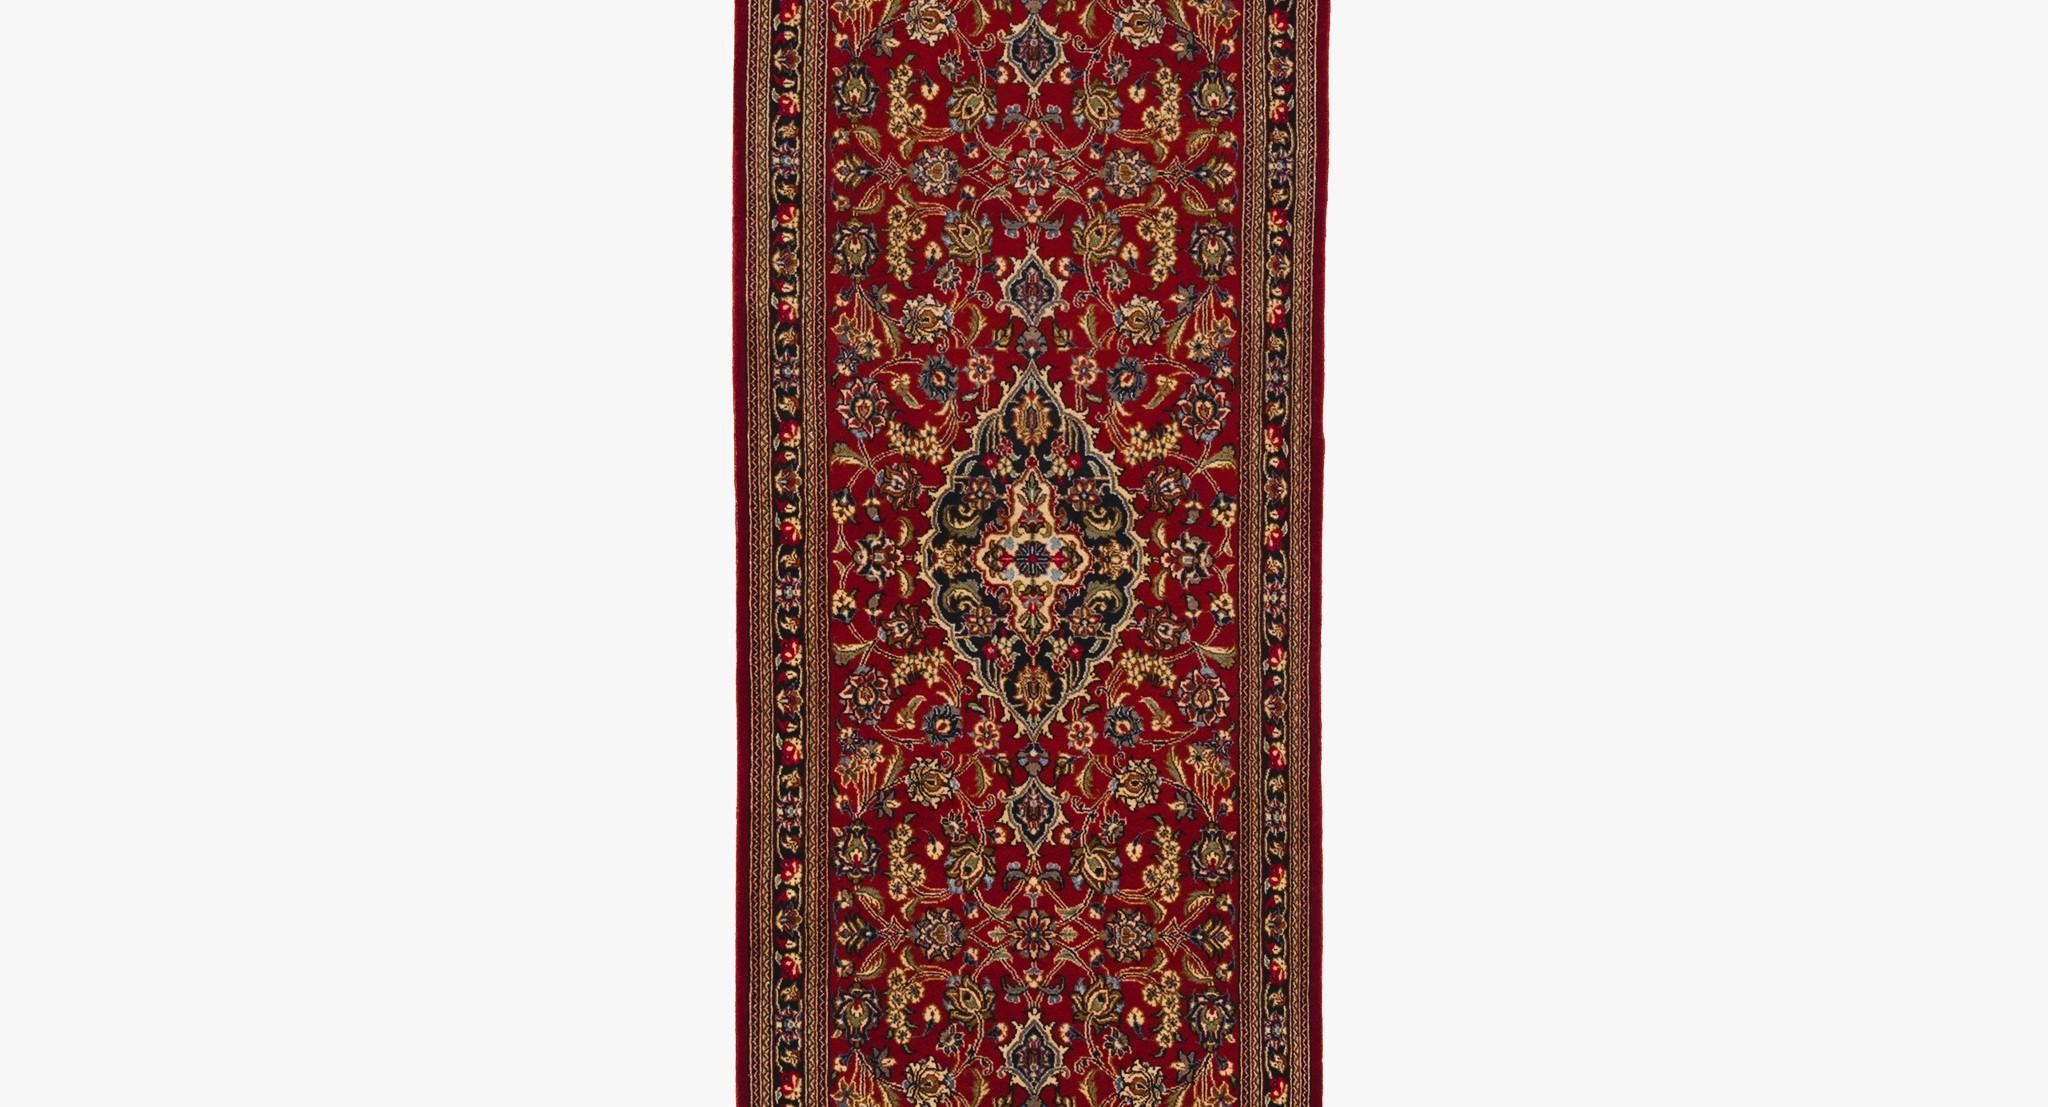 Qum-Teppiche sind unter verschiedenen Namen wie Qom-Teppiche, Ghom-Teppiche oder Ghum-Teppiche bekannt, wobei Qum eine verehrte Stadt im südlichen Teil von Teheran ist. Eines der bemerkenswertesten Merkmale der Qum-Teppiche ist die Verwendung von